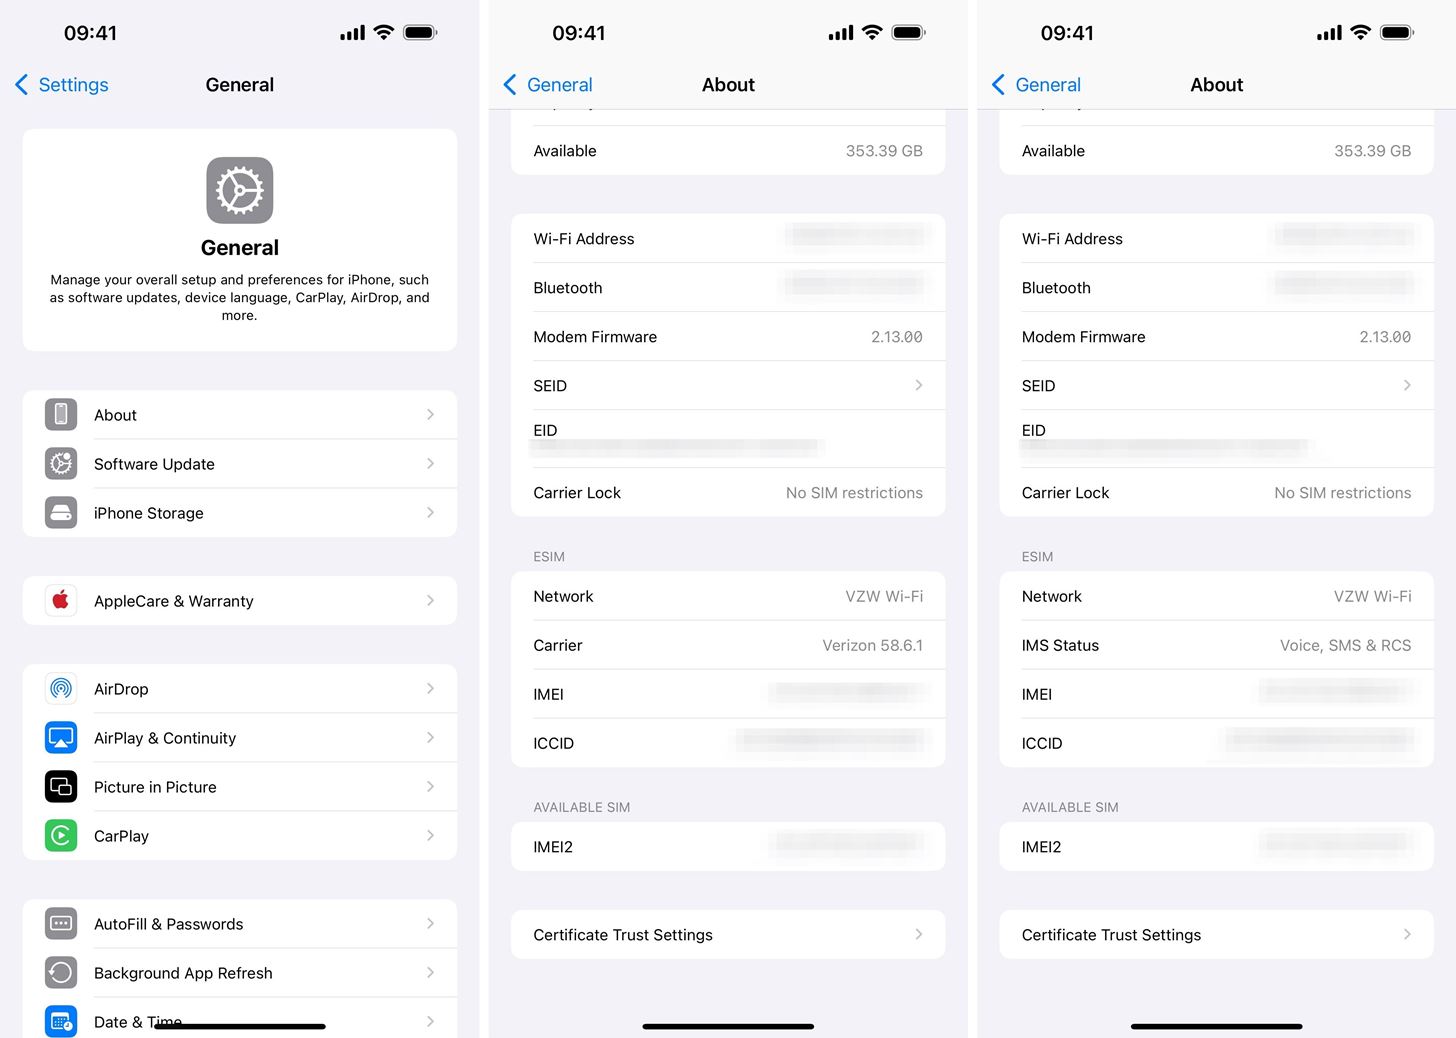 من iPhoneIslam.com، لقطة شاشة لقائمة إعدادات iPhone تعرض أقسامًا للإعدادات العامة ومعلومات الجهاز مثل عنوان Wi-Fi وBluetooth ومساحة التخزين المتوفرة - وهي مثالية لمستخدمي Android الذين يبحثون عن مقارنة ميزات مثل ميزة RCS لإجراء محادثات بسيطة بـ iMessage.